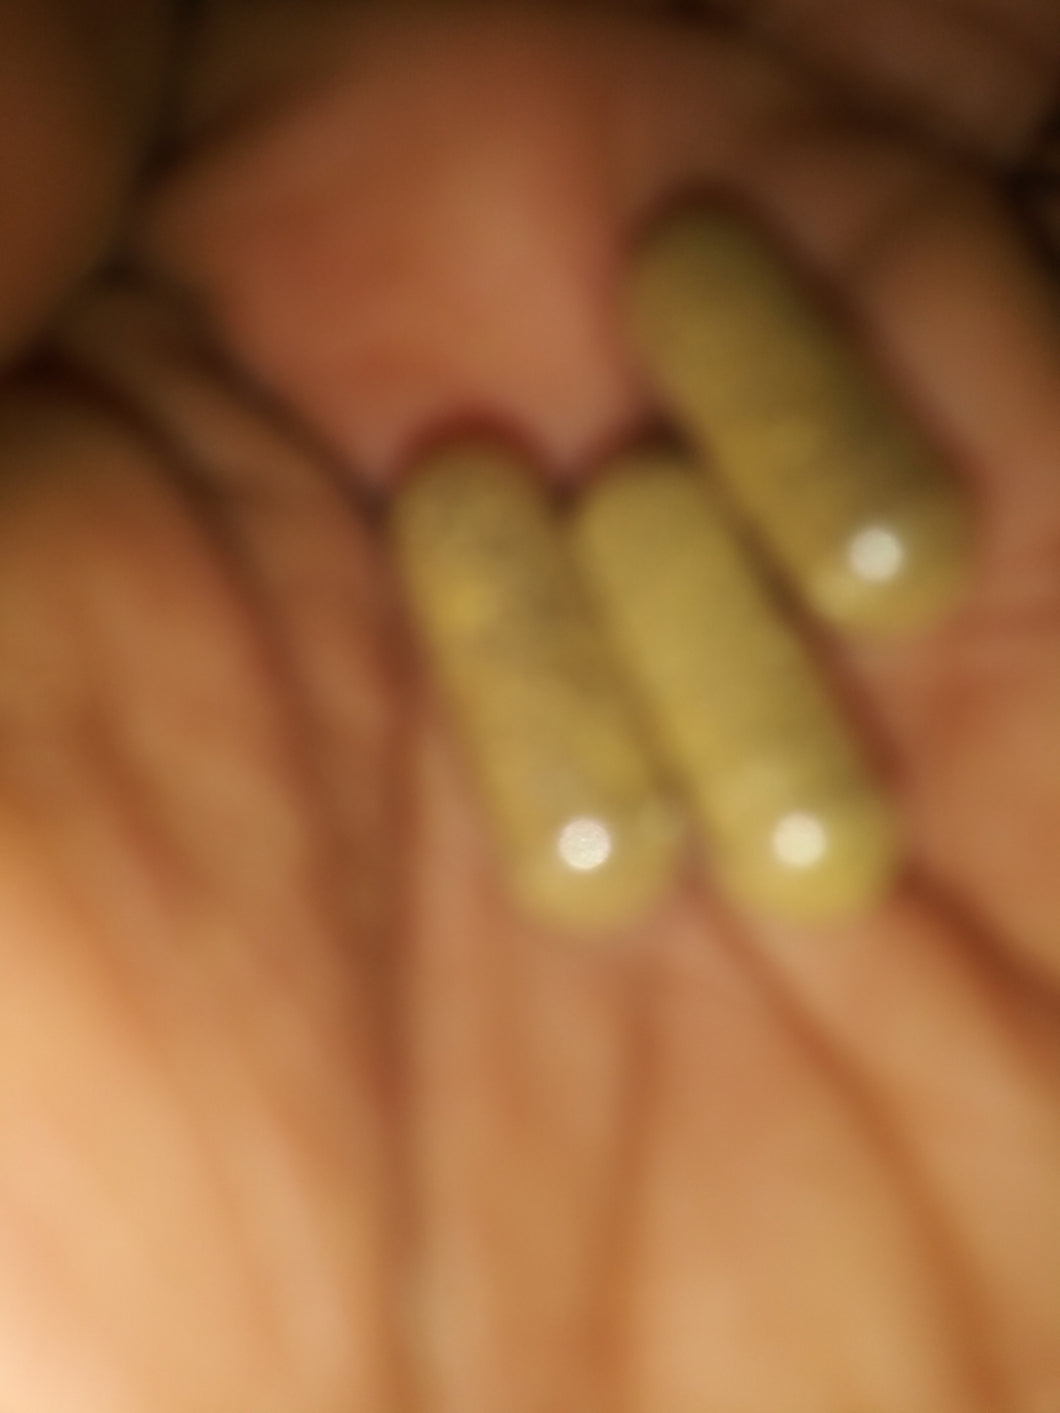 Wormwood capsules